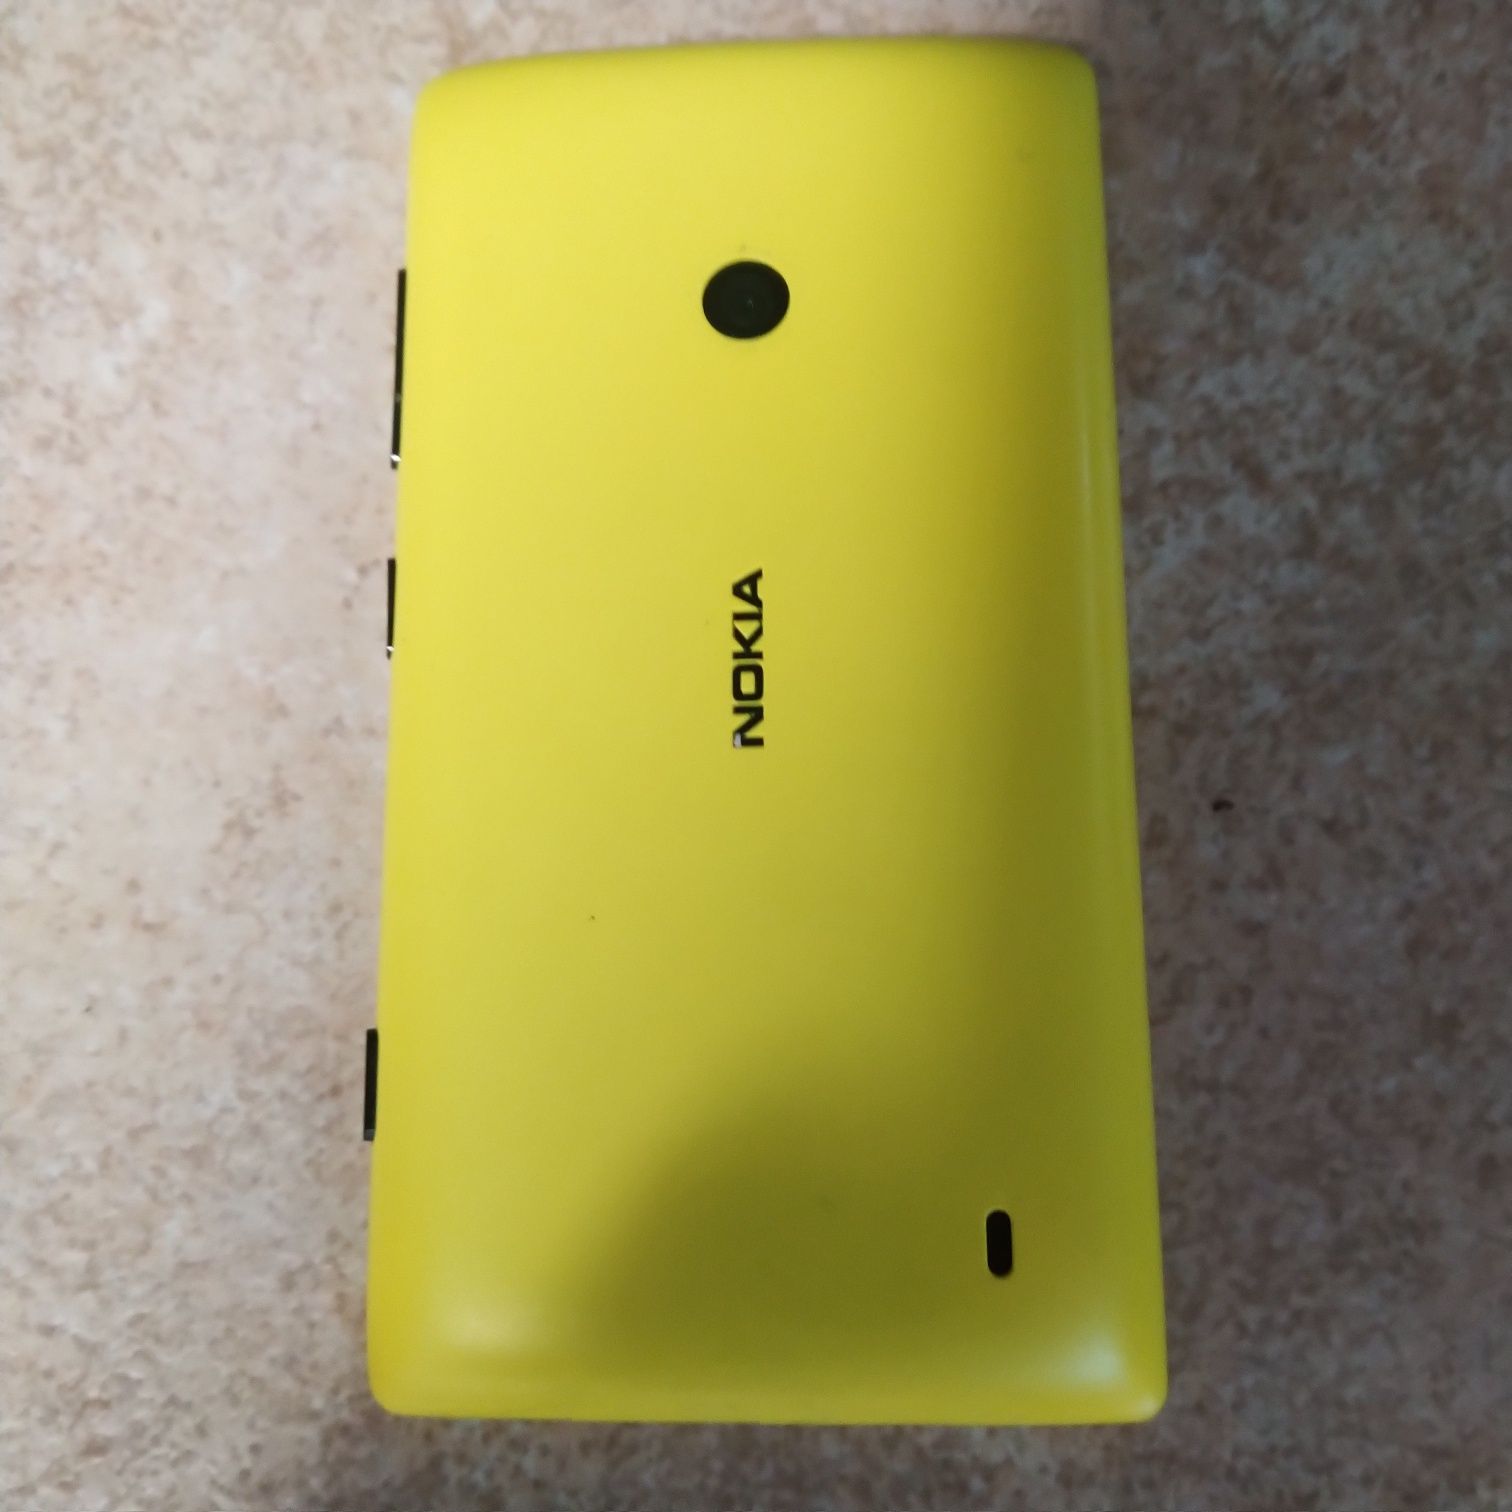 Nokia Lumia 520 cocтояние